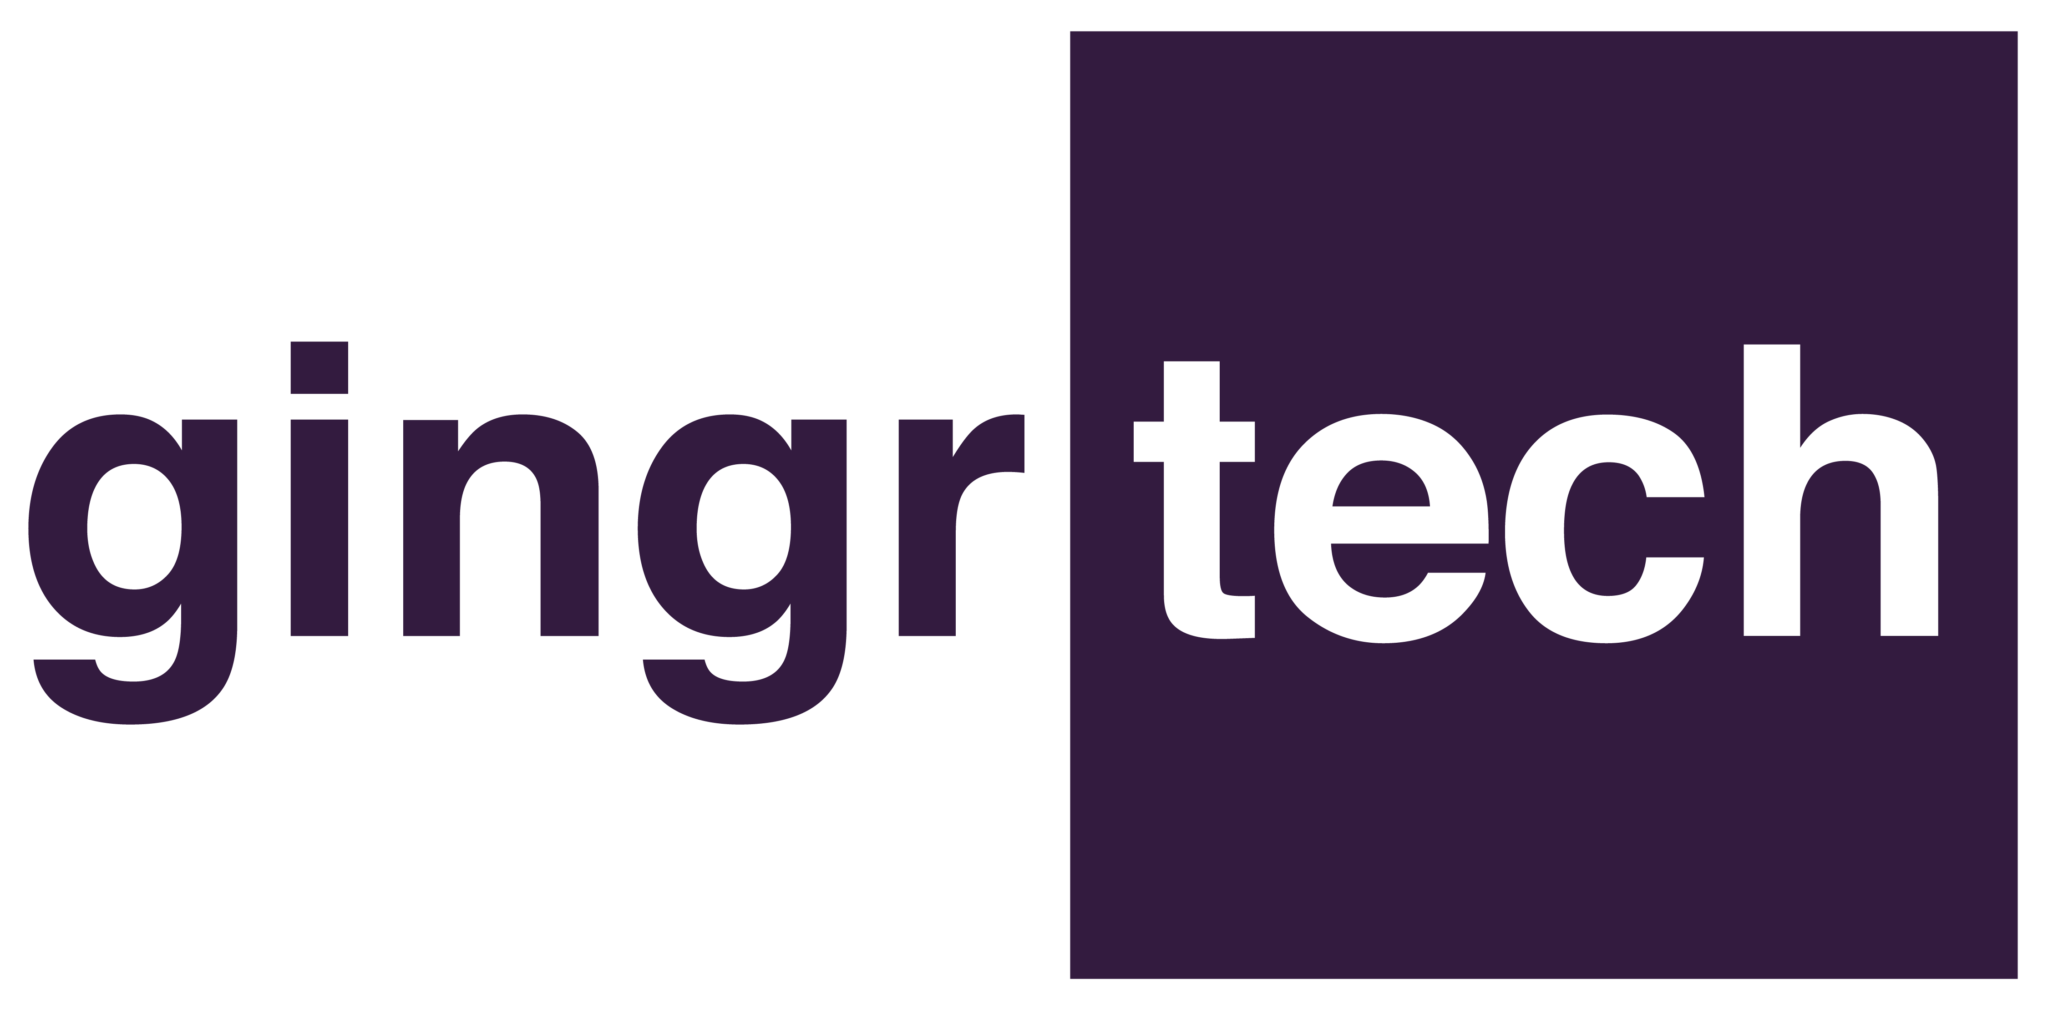 GingrTech